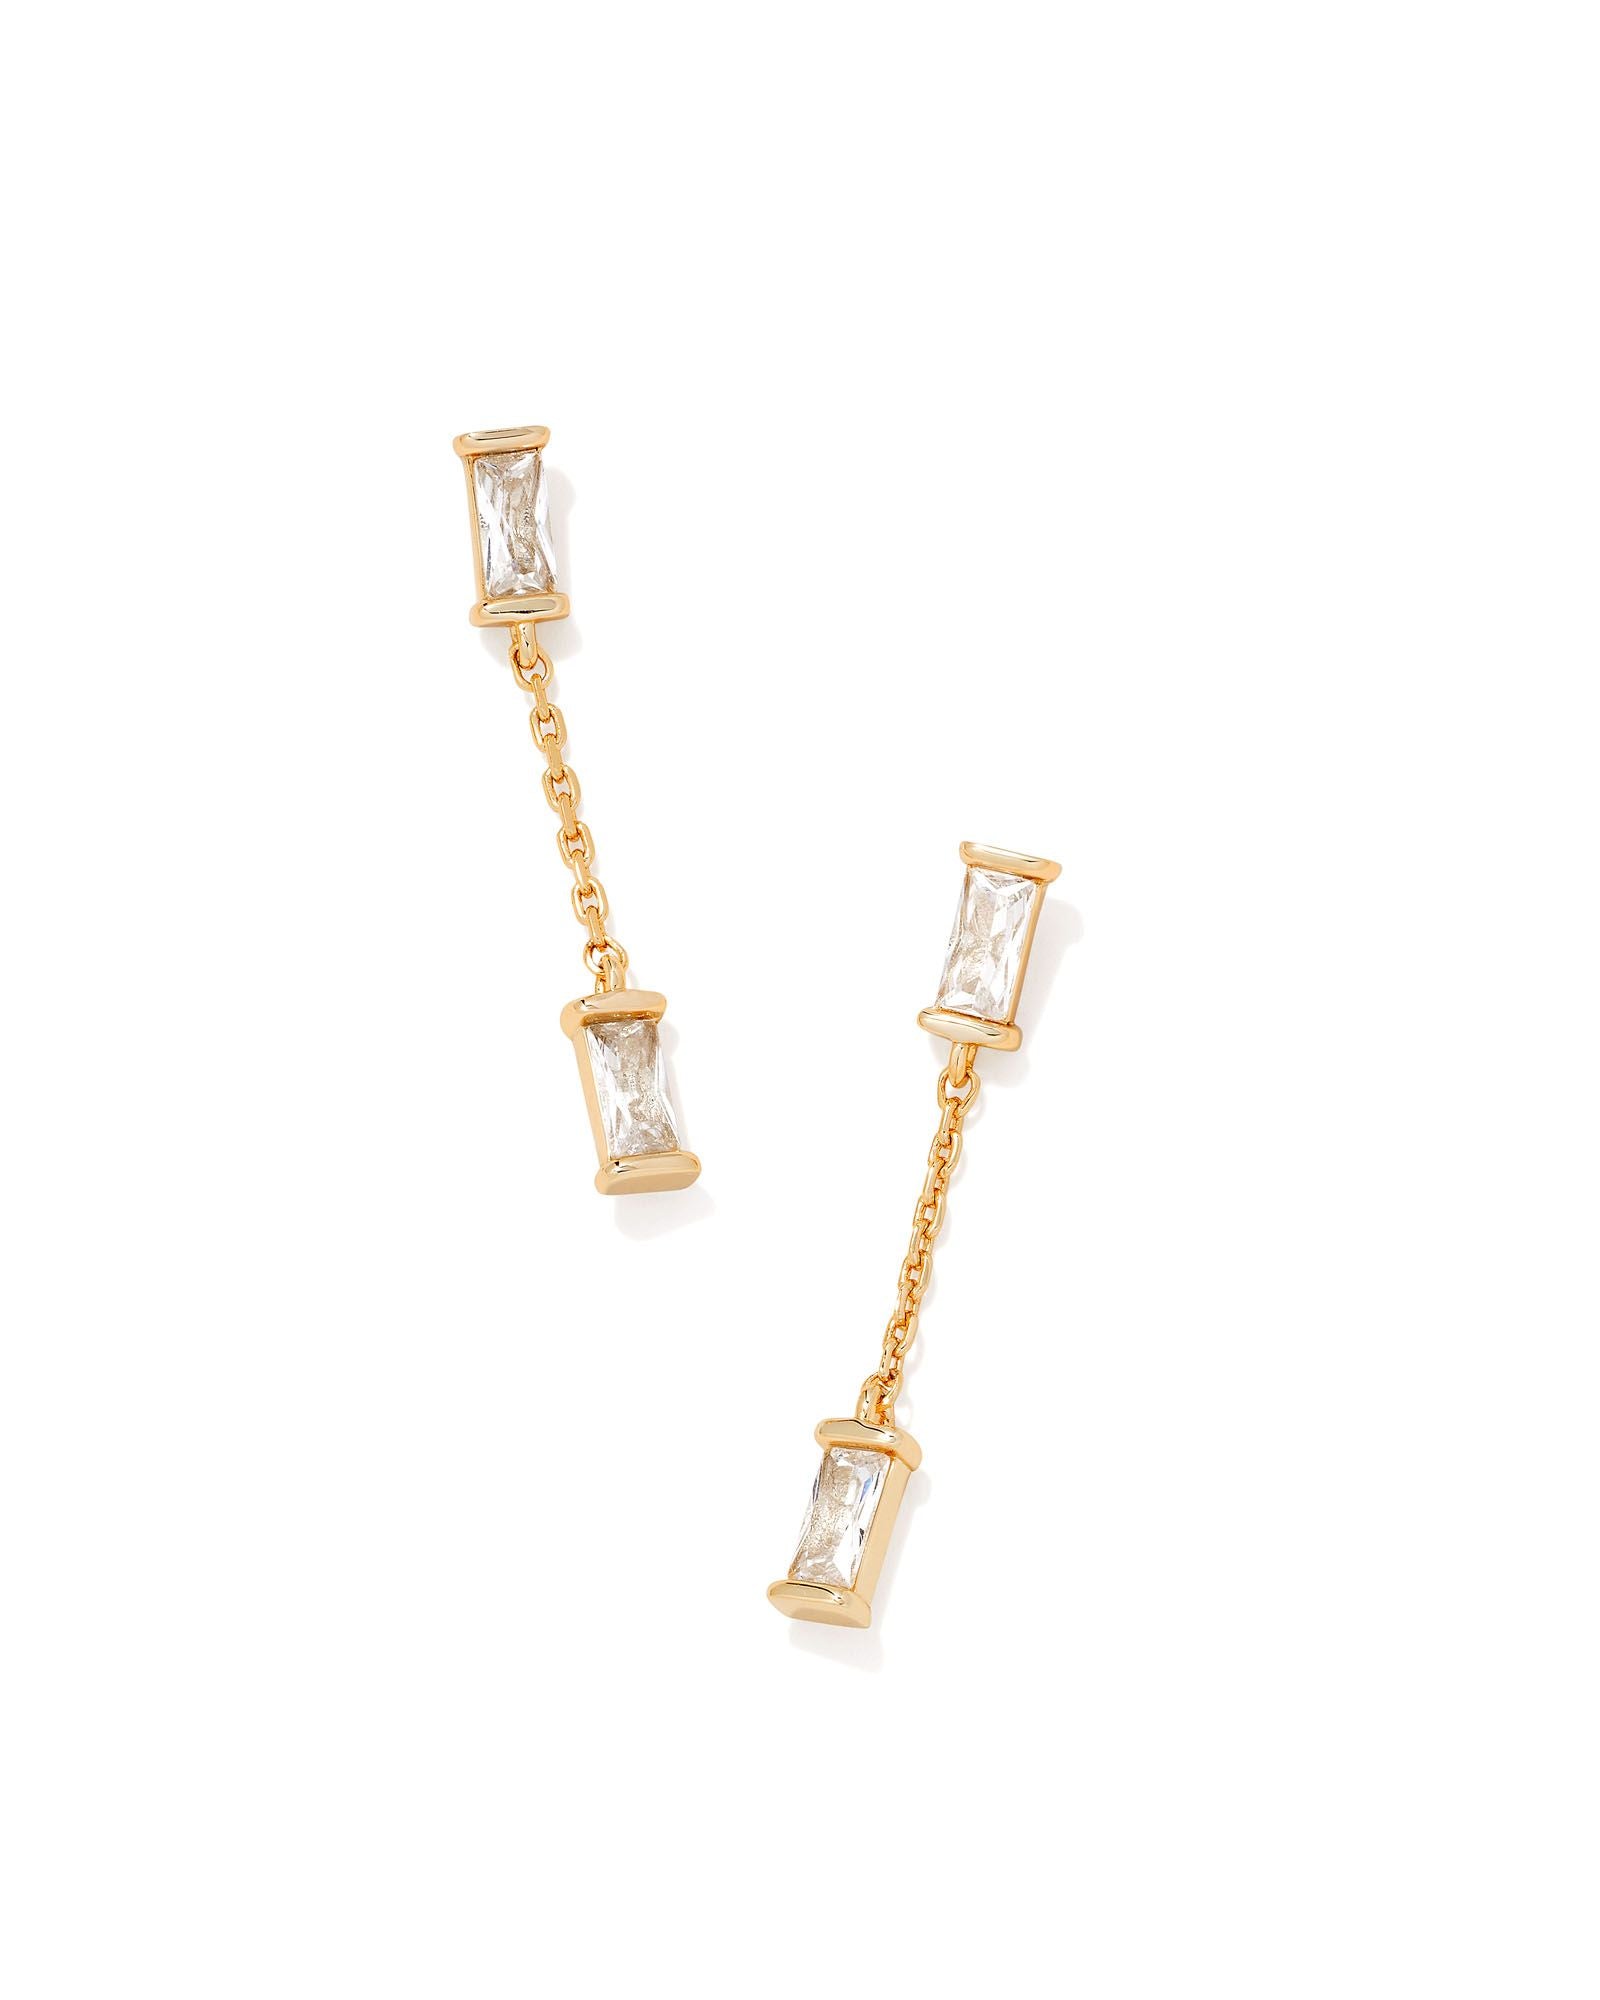 Juliette Drop Earrings in Gold White Crystal